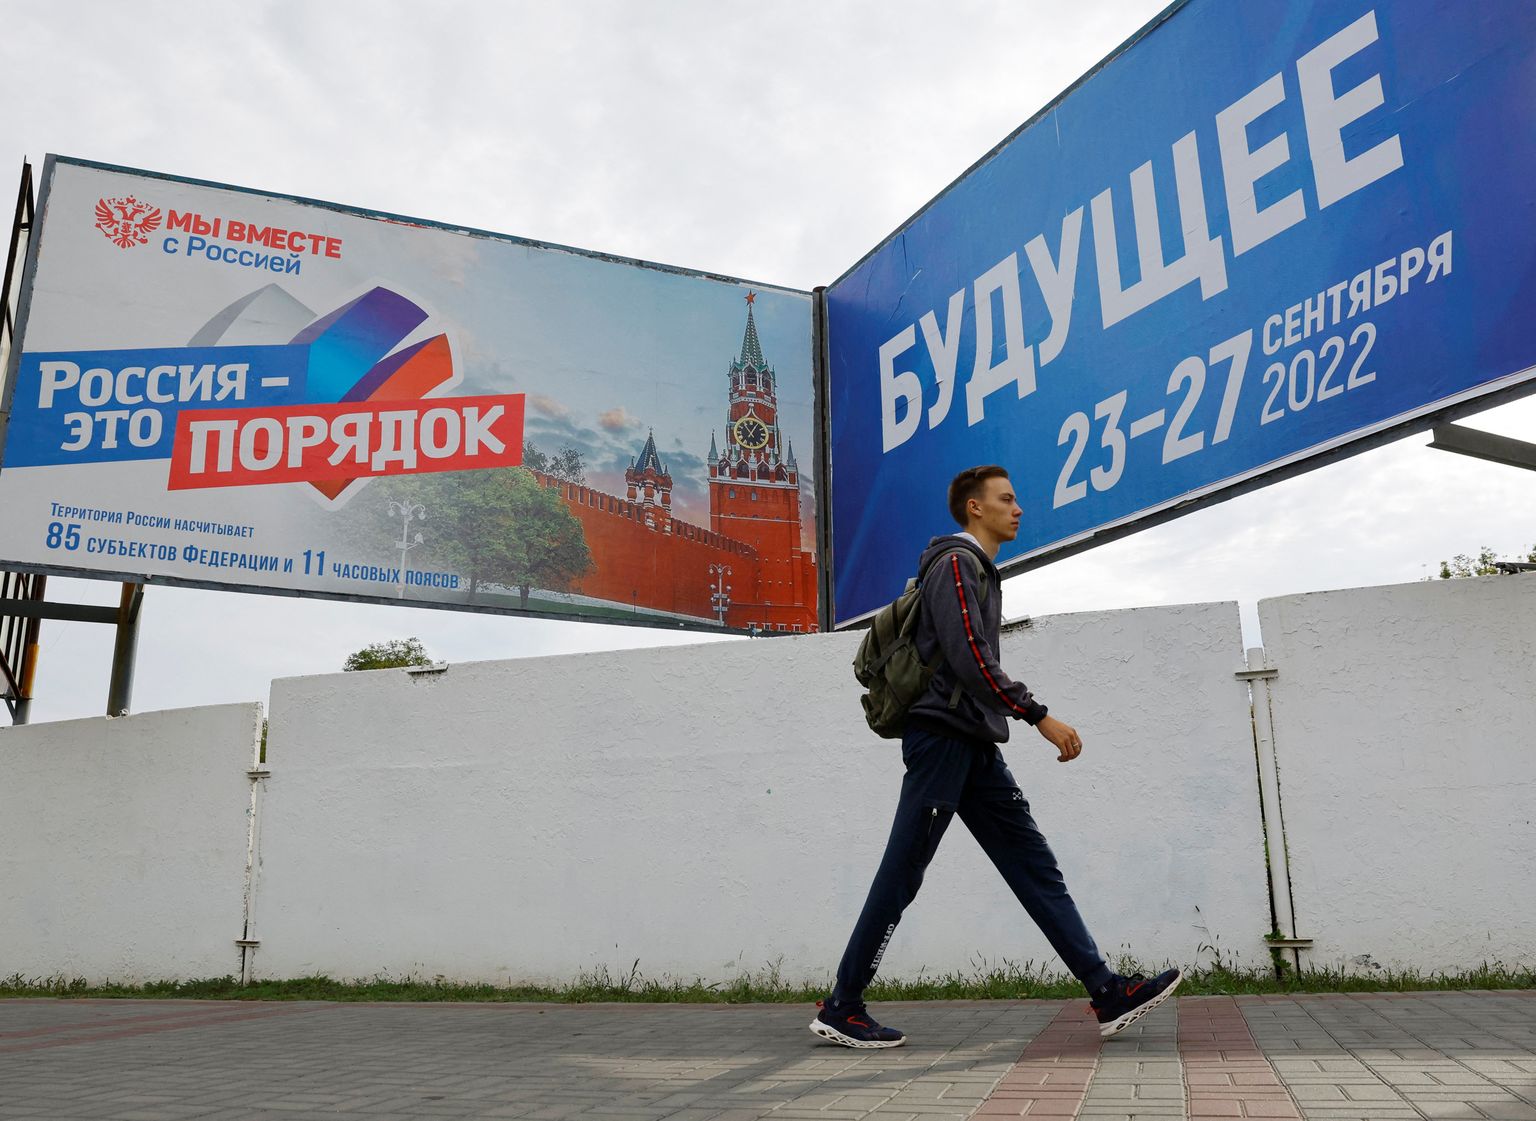 Krievijas okupētajās teritorijās Ukrainā izvietoti propagandas plakāti.